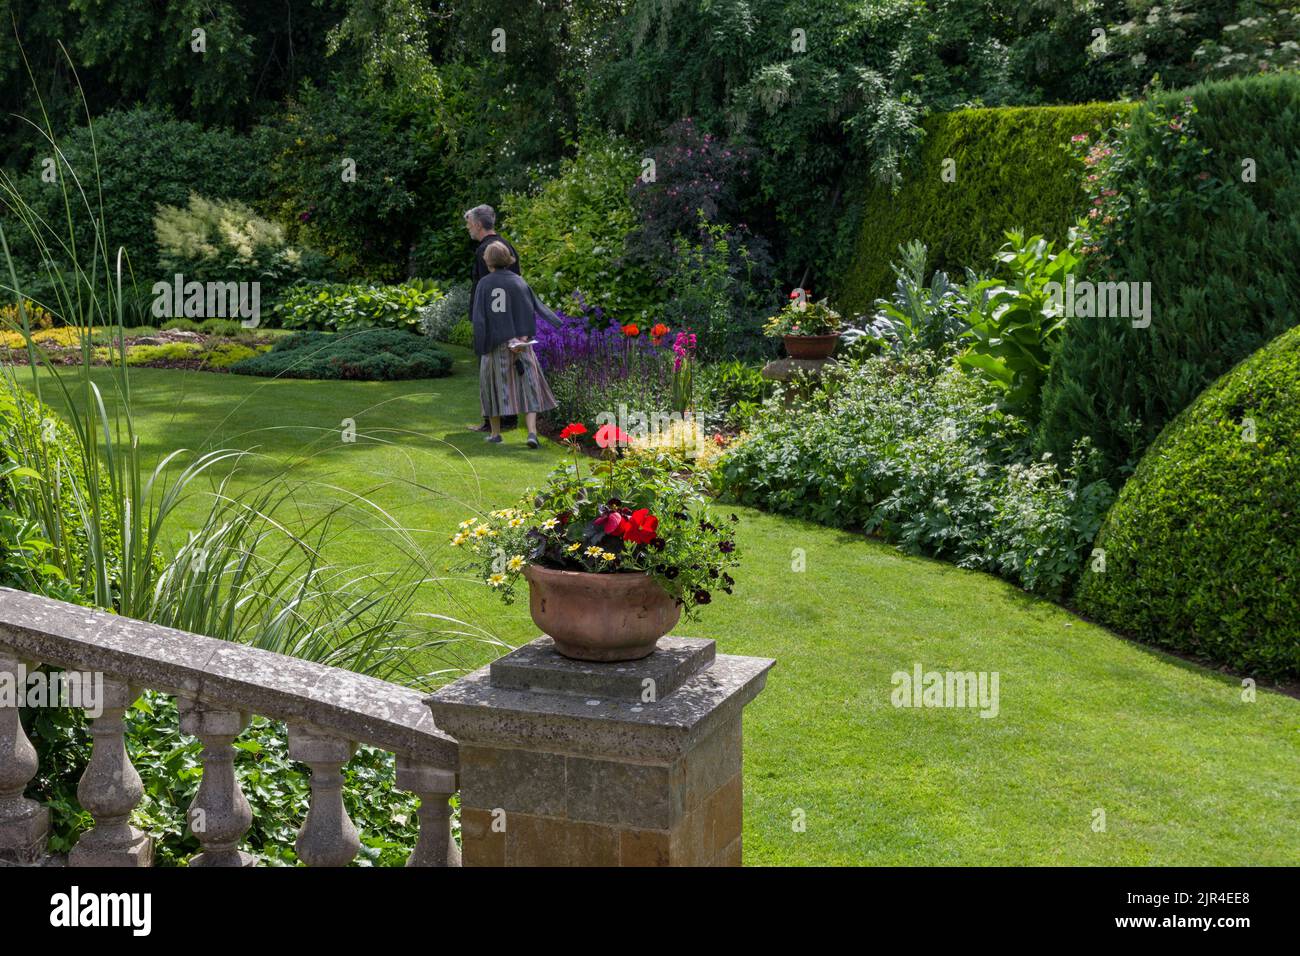 Typischer englischer Vorstadtgarten im Sommer, auf Rasen gelegt, krautige Ränder und Bäume, Gayton Village, Northamptonshire; Teil des offenen Gartenkonzepts Stockfoto